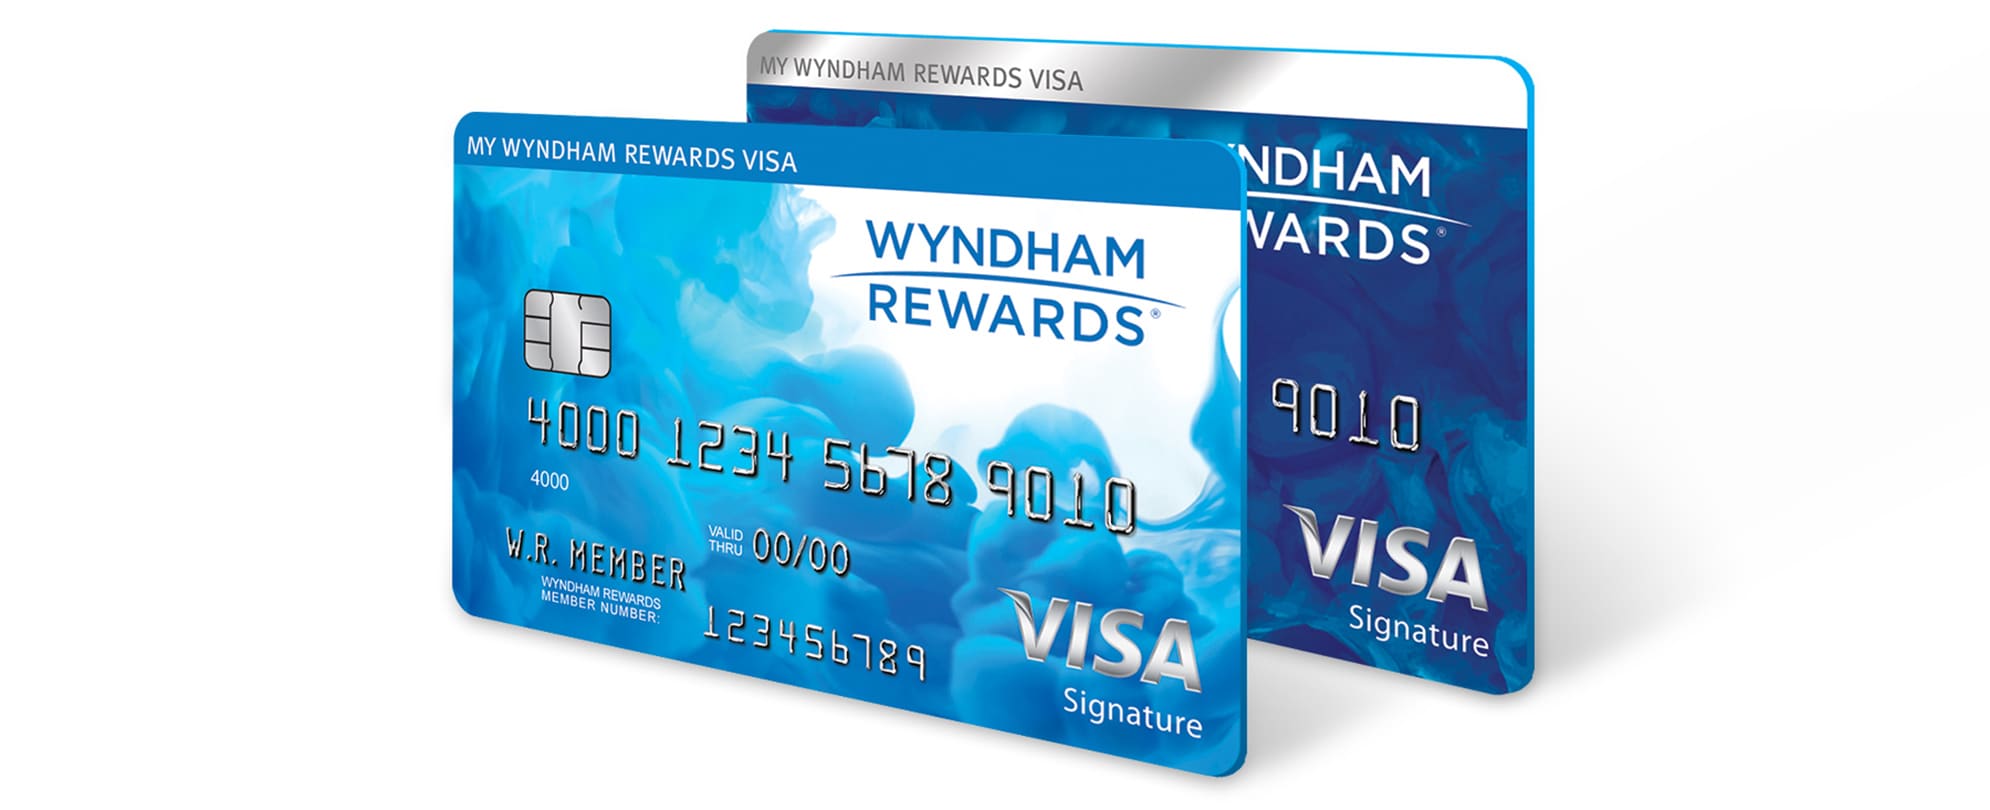 Wyndham Rewards Credit Card Payment AppORama Update